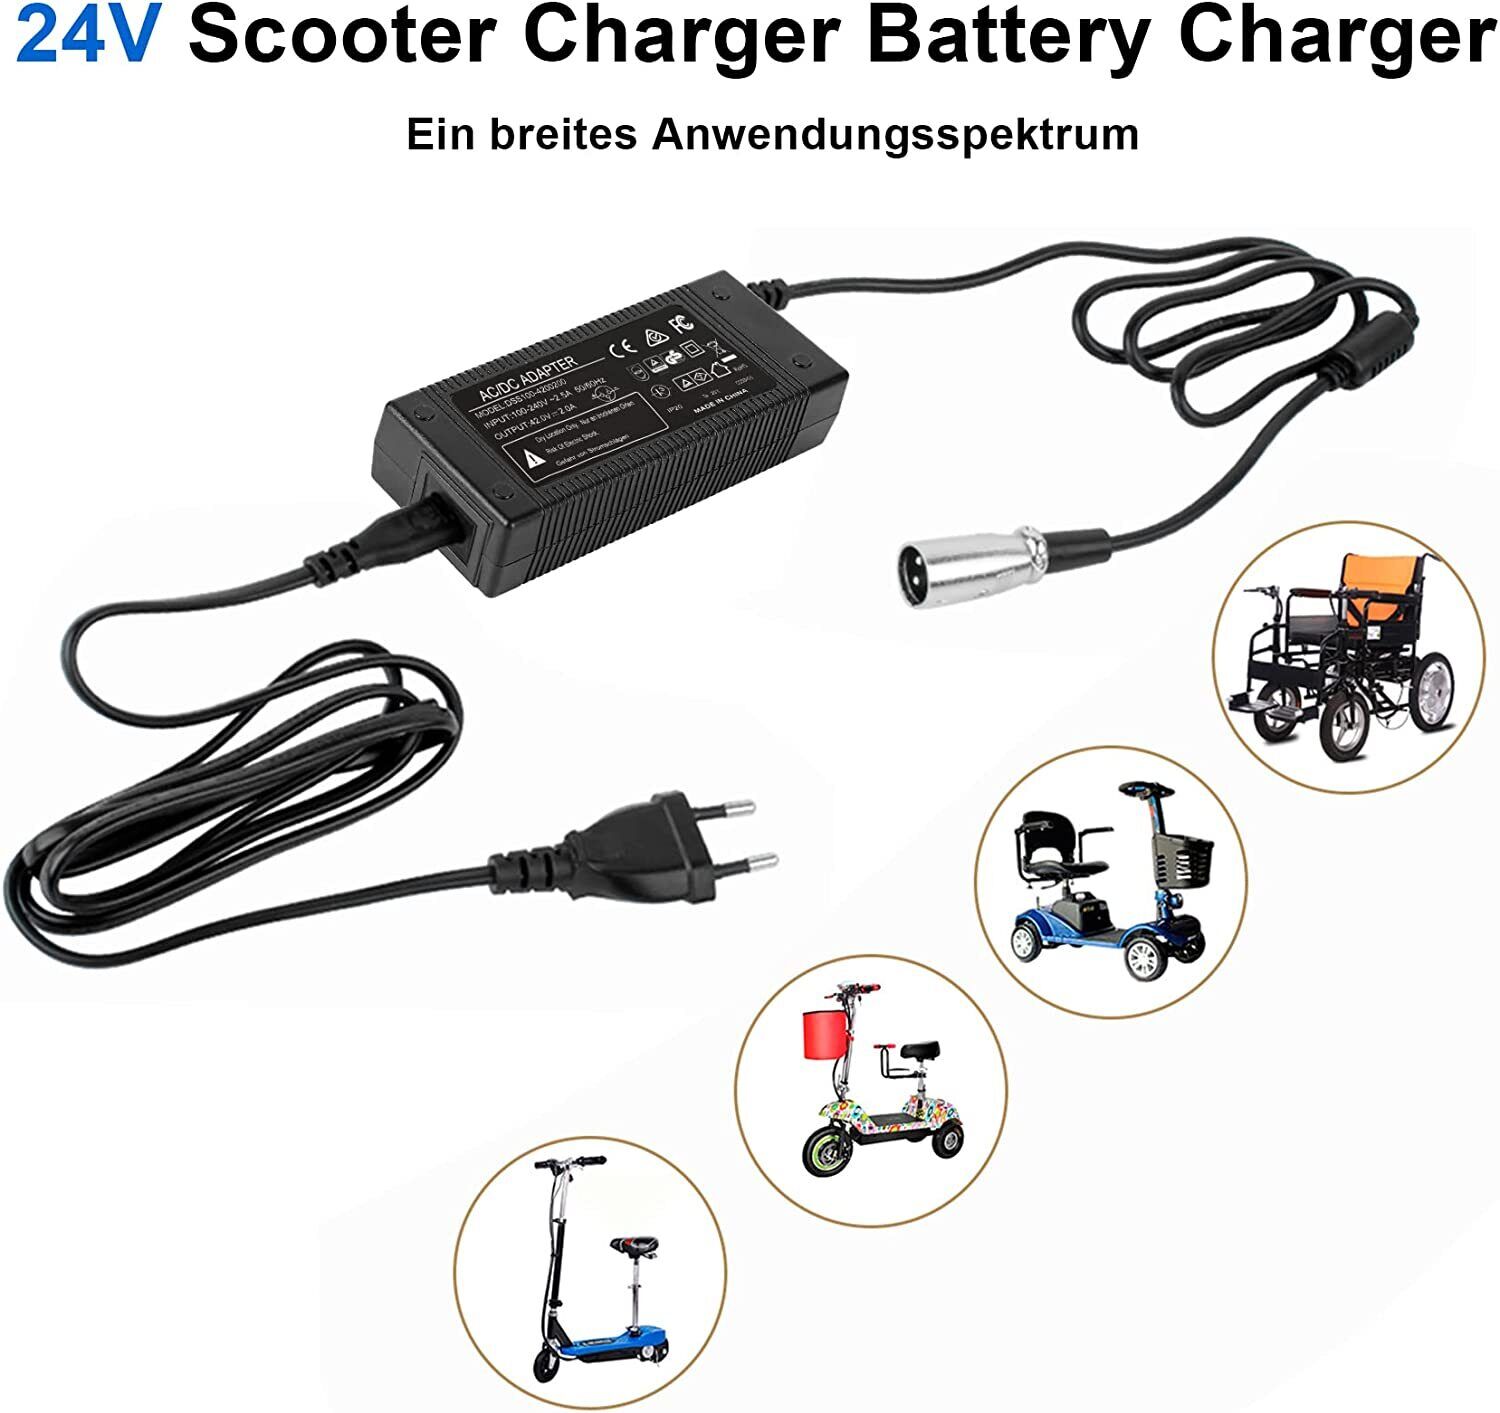 Chargeur Li-Ion 24V - 2Ah pour batterie de vélo électrique